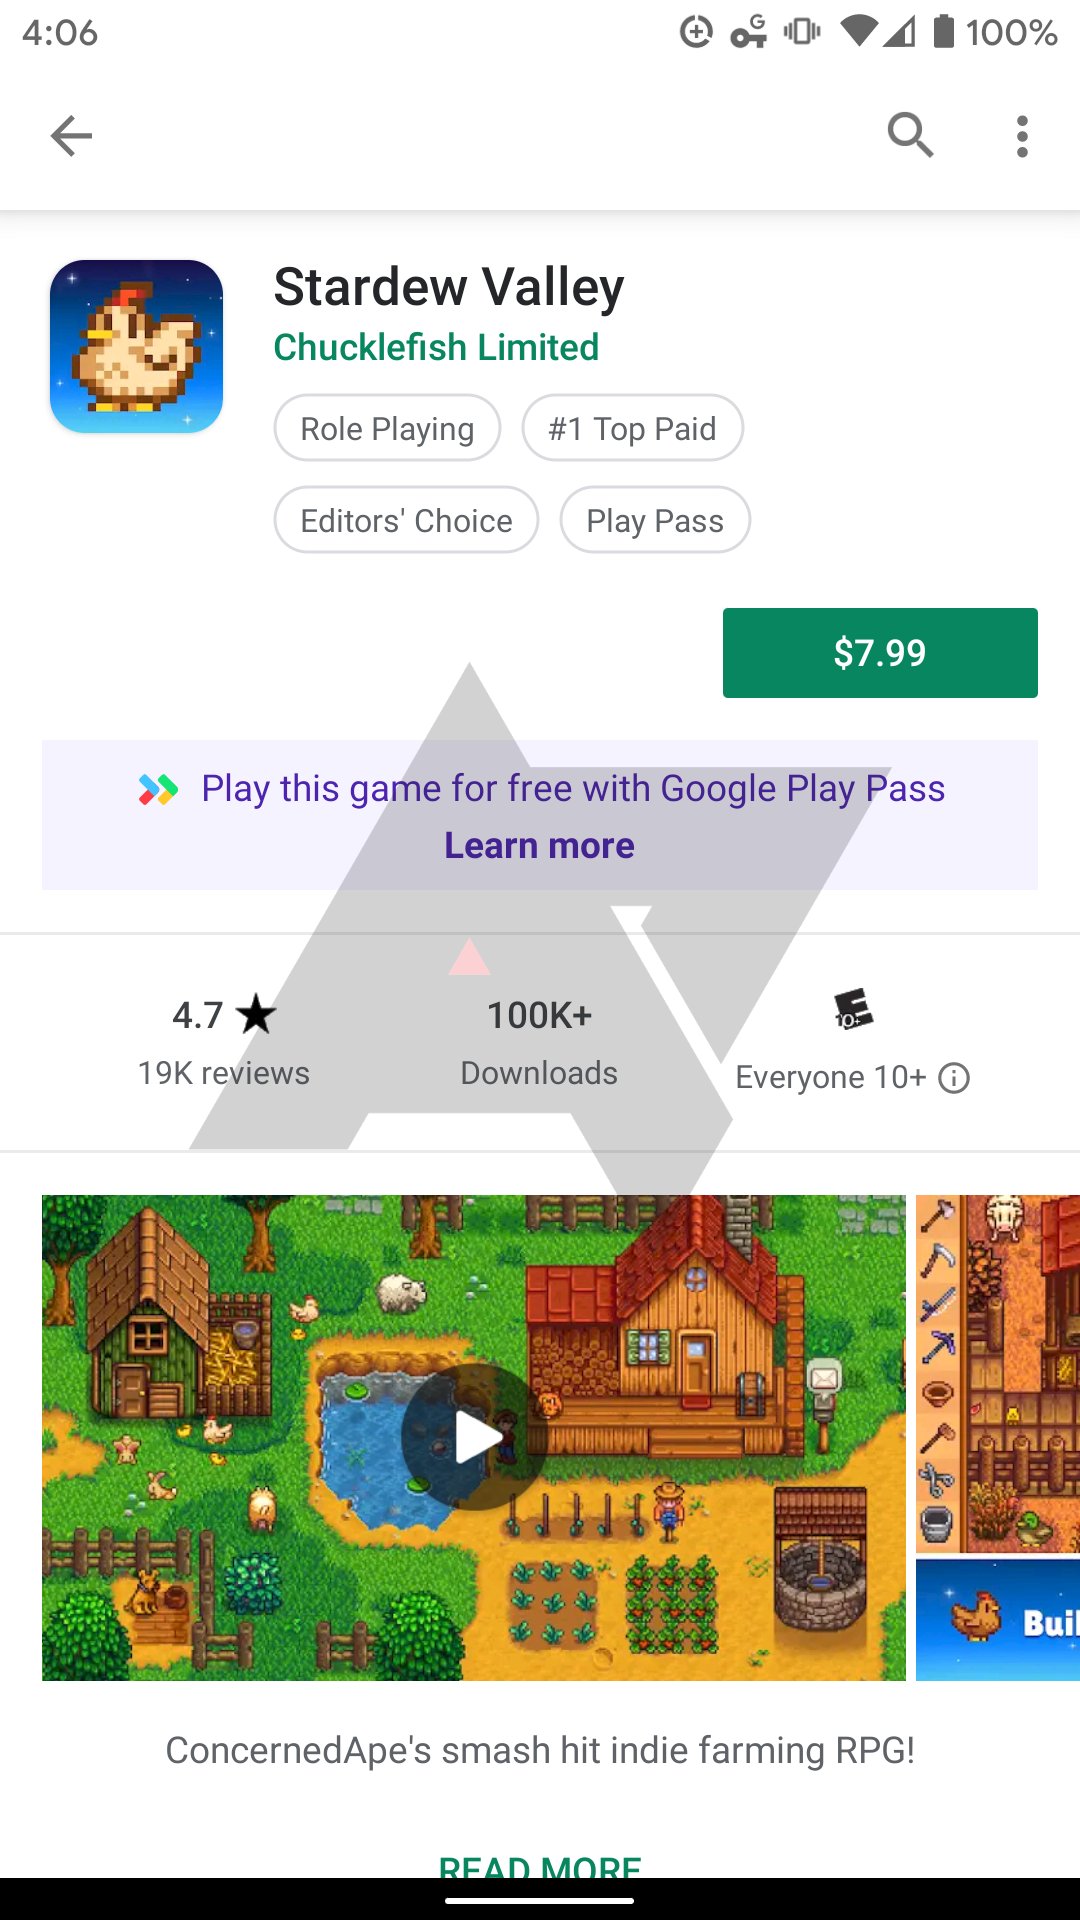 Google Play Games Anmeldung Nicht Möglich